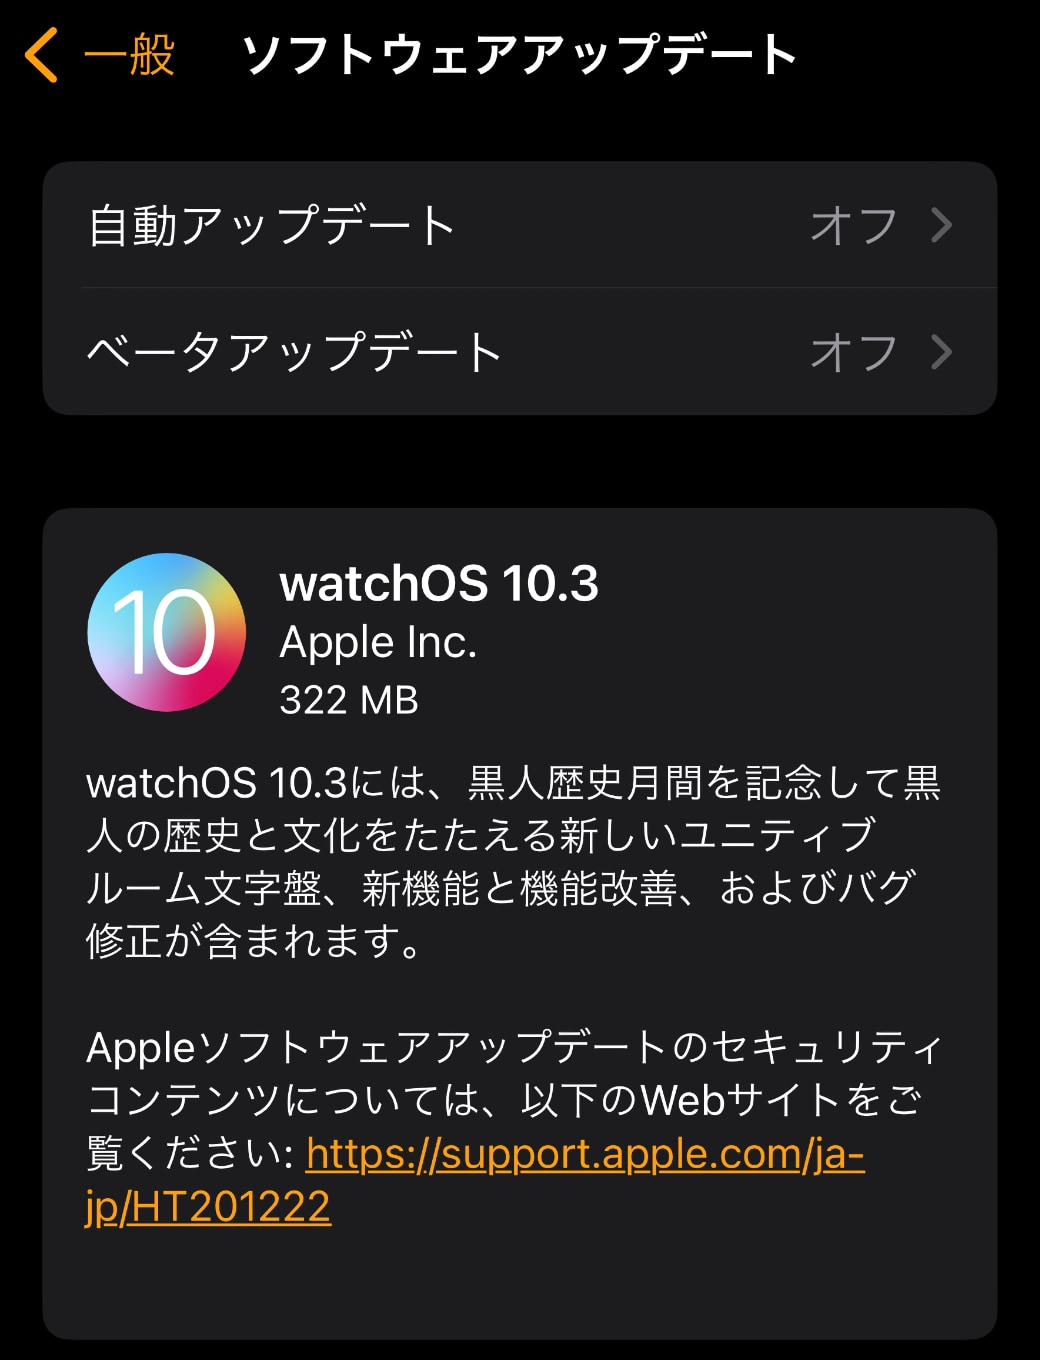 watchOS 10.3